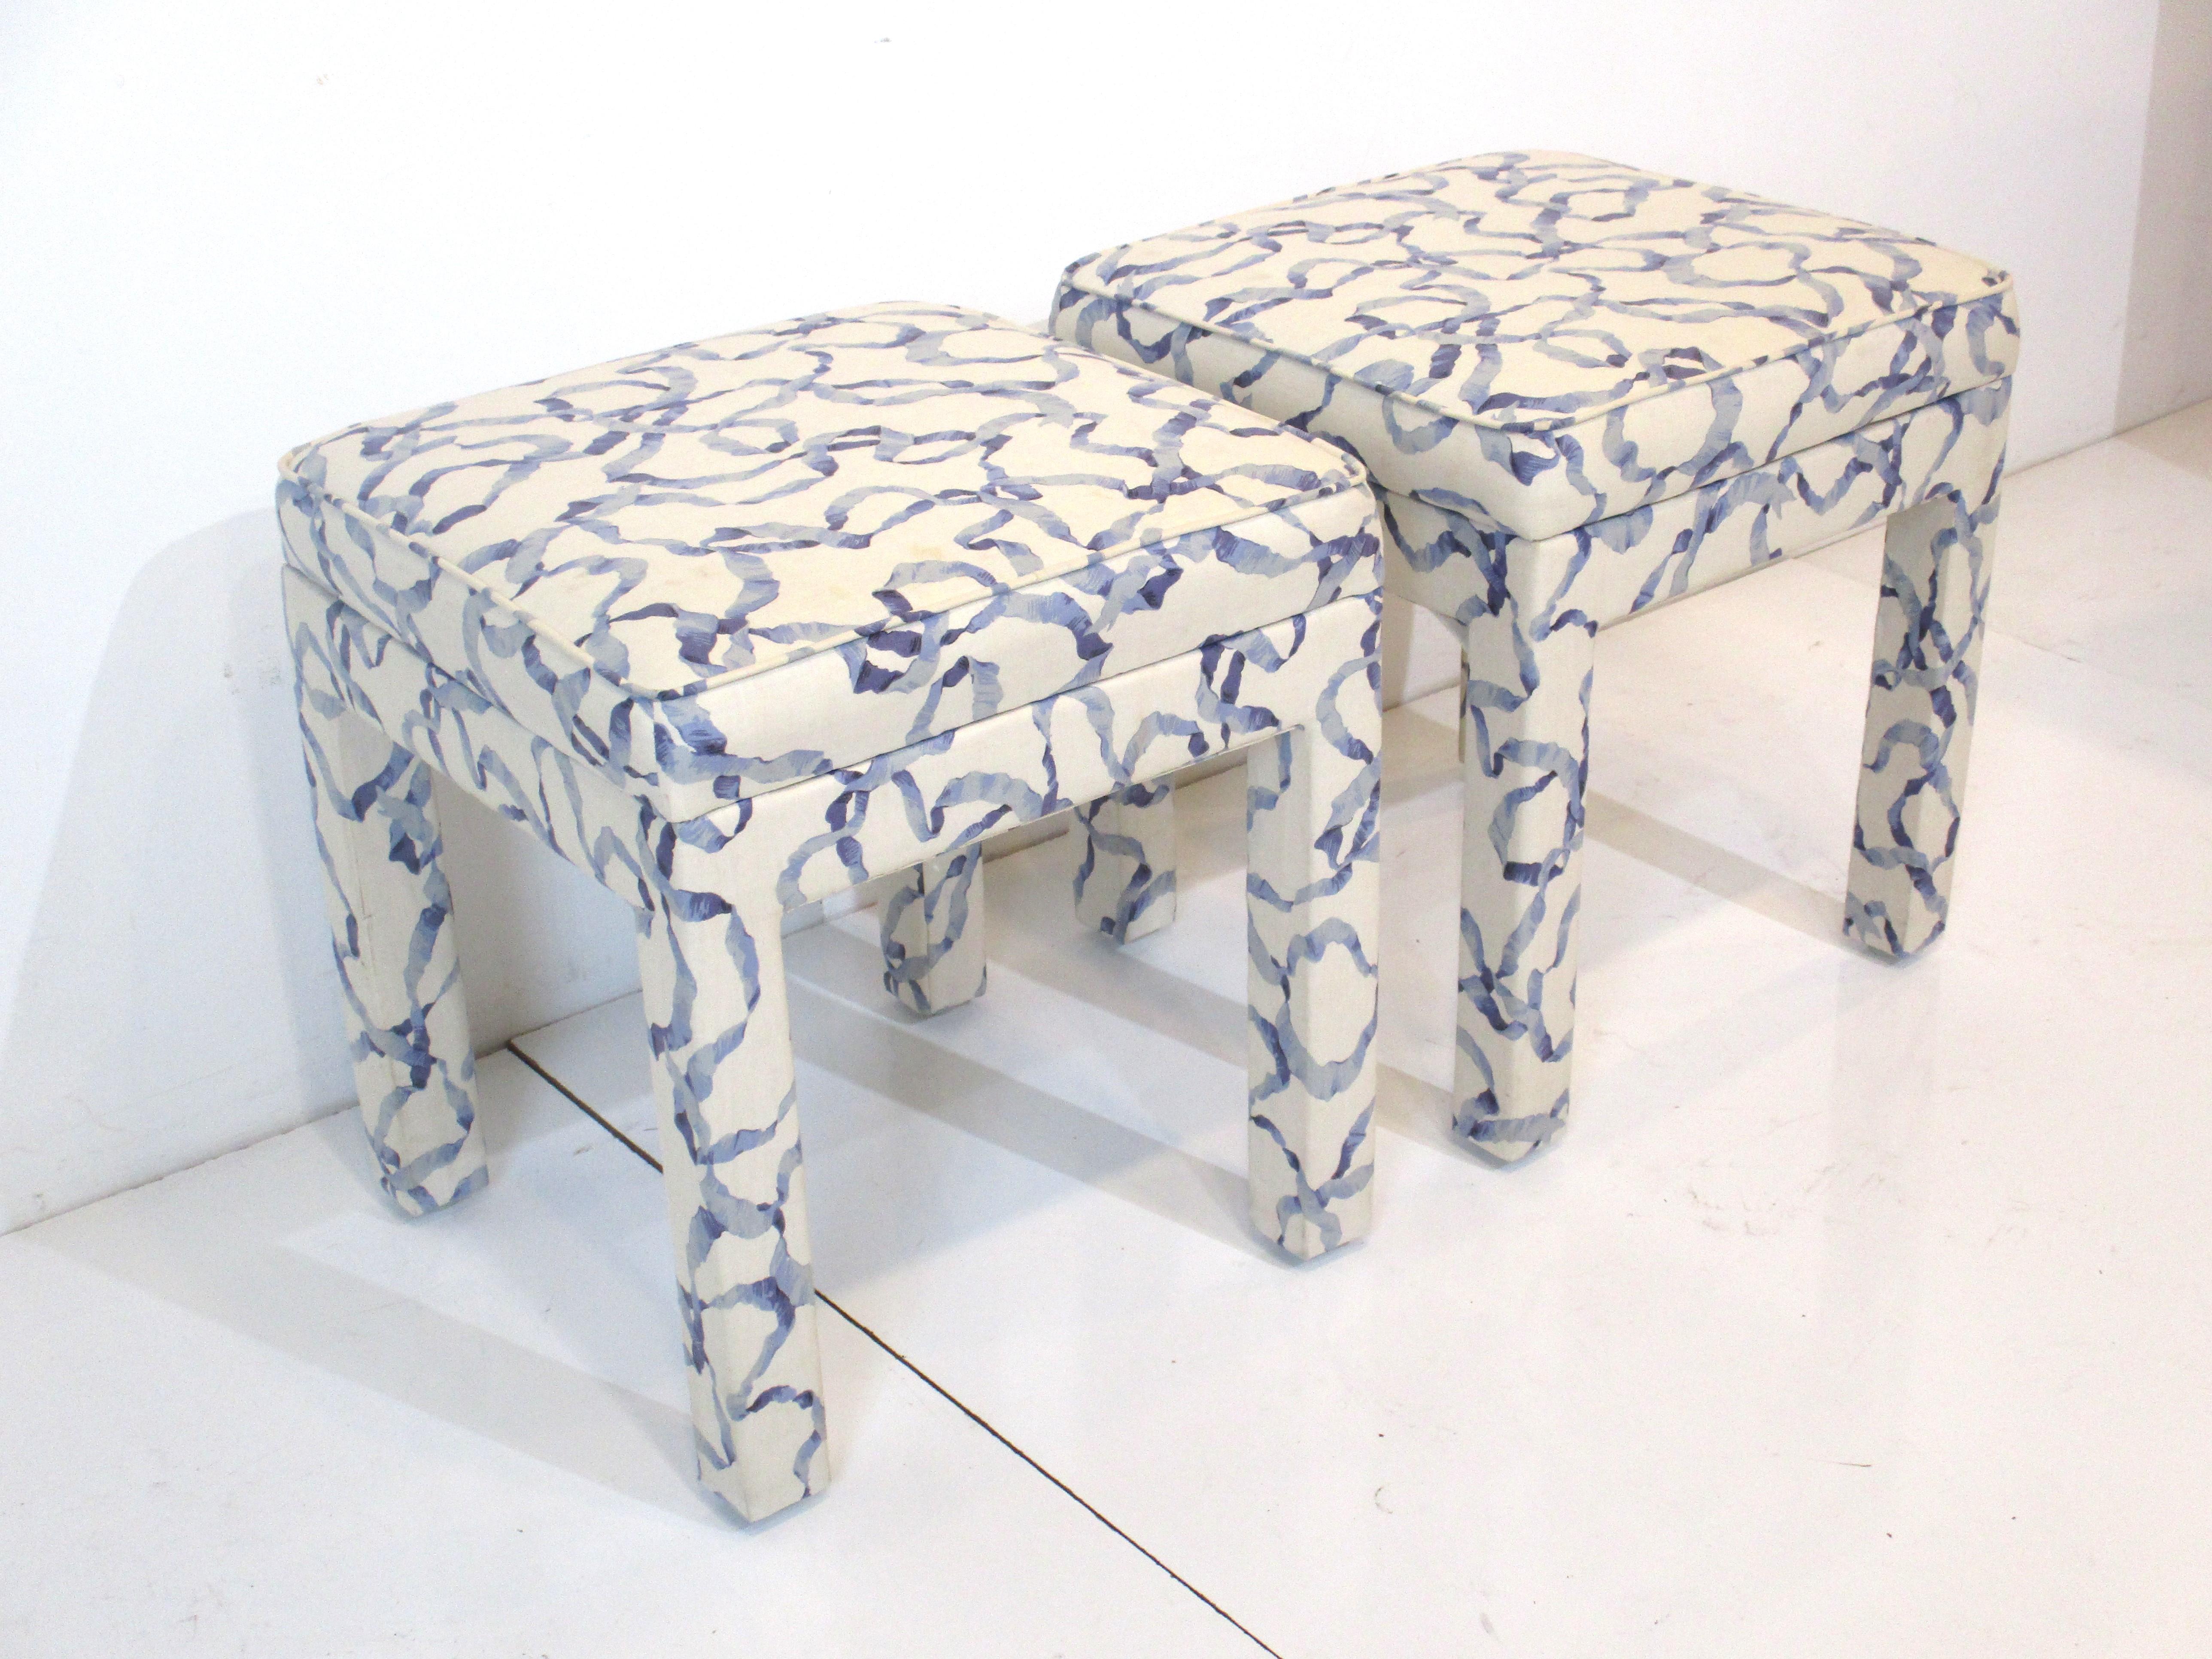 Une paire de tabourets rembourrés de belle taille dans un tissu bleu et crème, parfaits pour s'asseoir ou pour être rangés sous une table console. Fabriqué à la manière de la société Henredon Furniture.